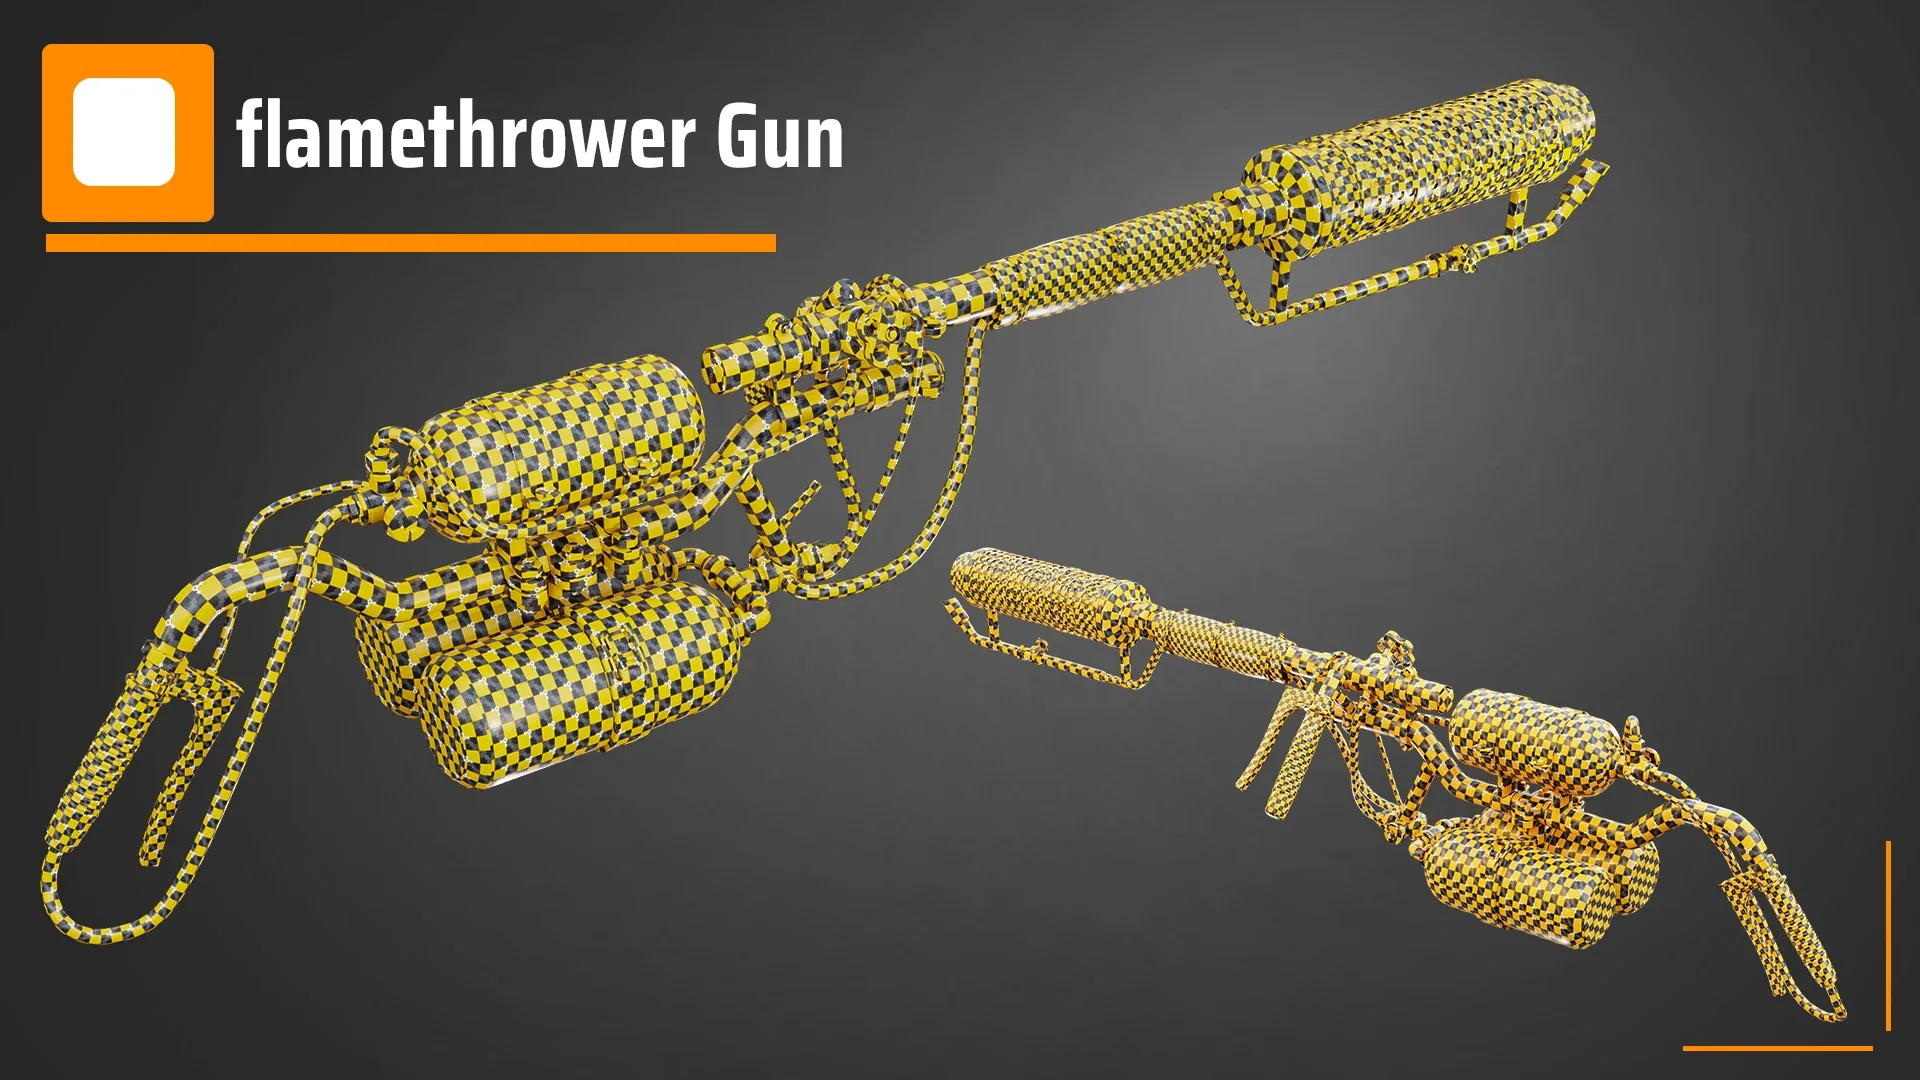 Flamethrower gun